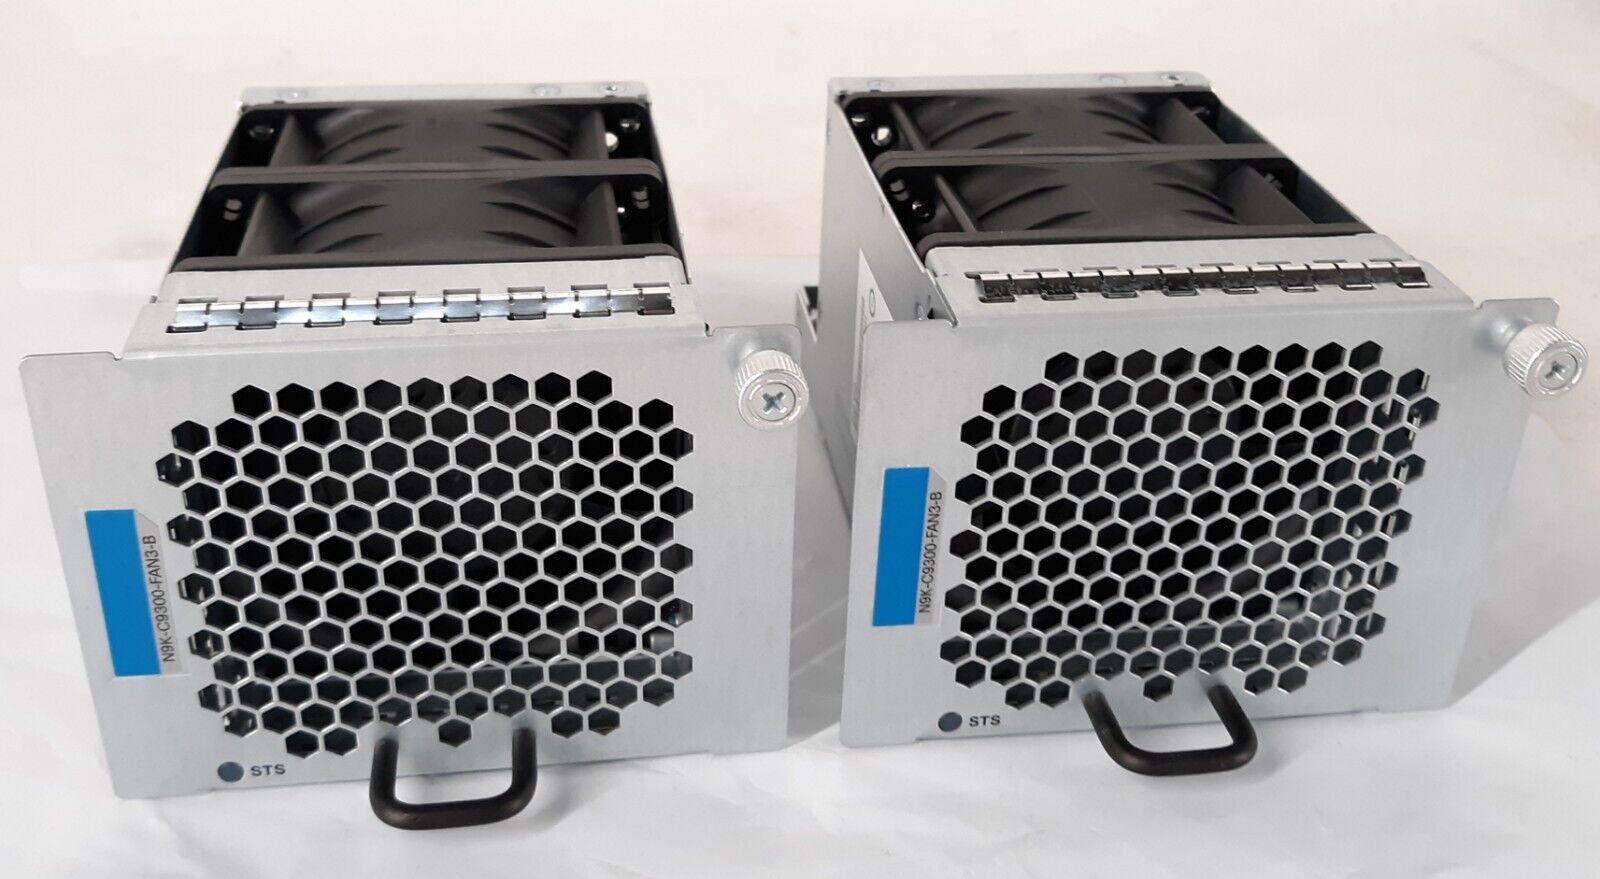 Pair of Cisco N9K-C9300-FAN3-B V01 800-44092-01 Fan Module